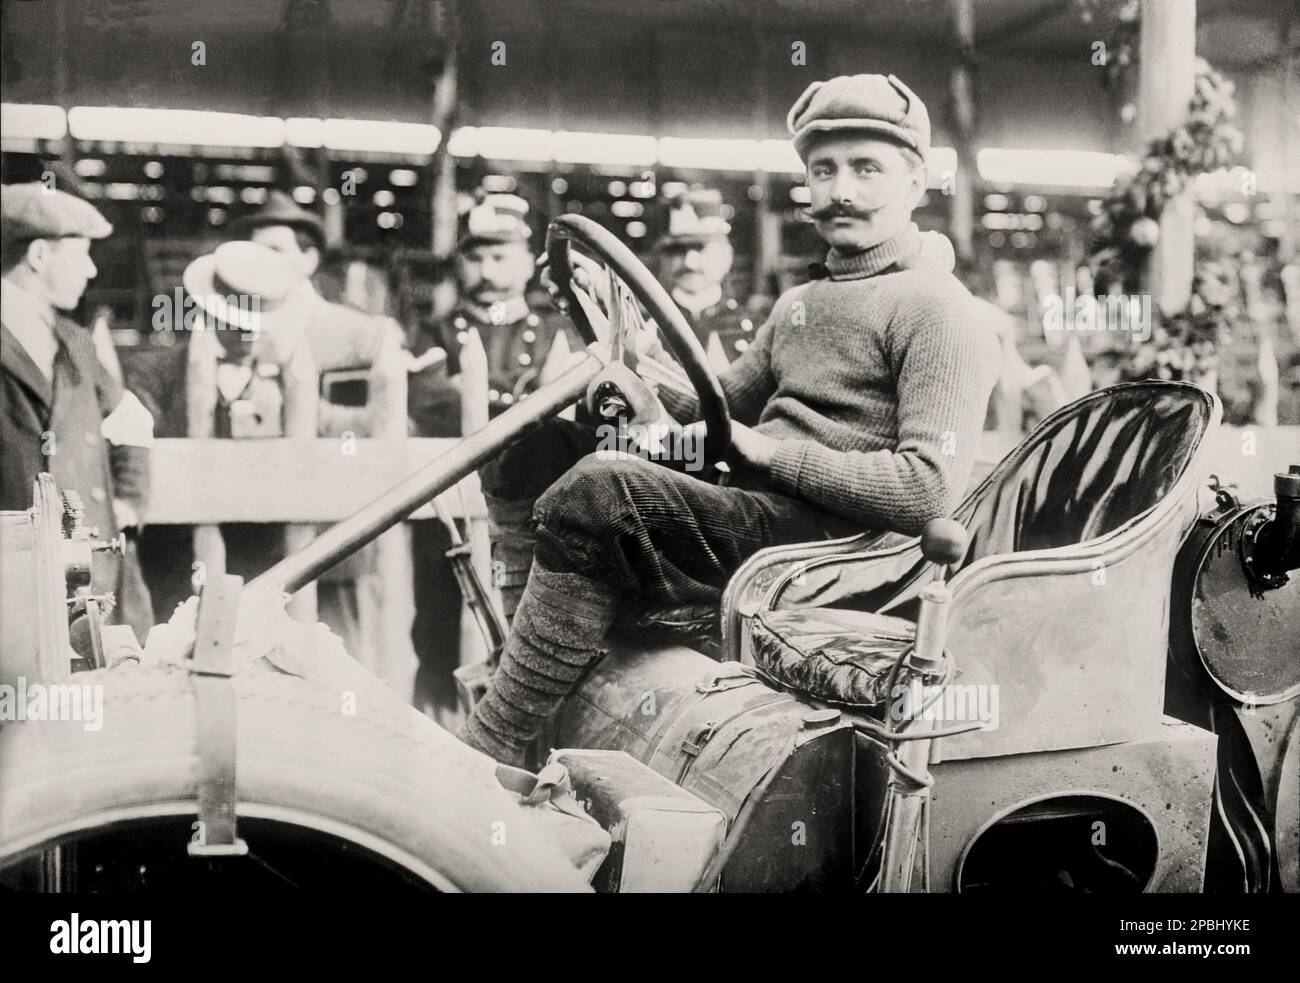 1908 , 18 mai, ITALIE : Targa Florio auto race , Edition 2nd , le gagnant VINCENZO TRUCCO sur ISOTTA FRASCHINI . Vincenzo Trucco était un pilote de course de Milan, en 1908 a gagné le Targa Florio et a participé à Indy 500 en 1913 . Trucco était également ami et mentor d'Alfieri Maserati , Avec qui il a breveté bougie automobile - SPORT - AUTOMOBILISMO - gara Bélilistica - AUTOMOBILE - corsa - AUTO - VOITURE - PHOTO D'HISTOIRE - FOTO STORICA STORICHE - Targa-Floro - bachigi - moustache - chapeau - cappello - fustagno - velours - velluto - zuava - BELLE EPOQUE ---- Archivio GBB Banque D'Images